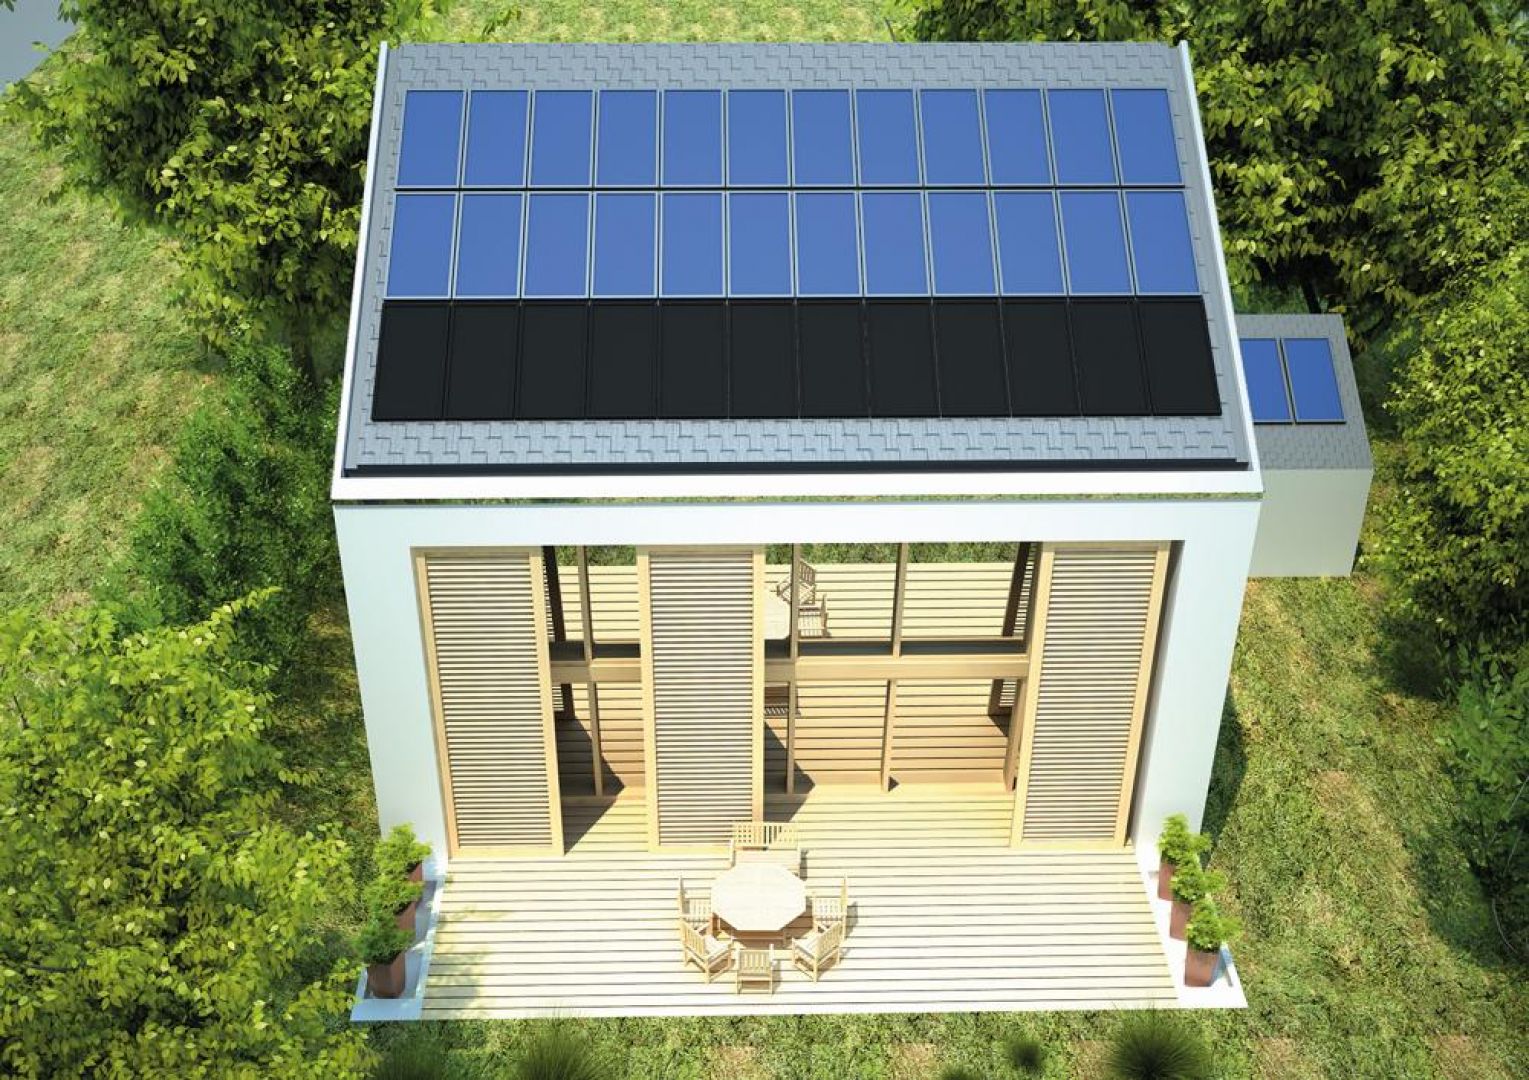 Elewacja południowa w budynkach pasywnych pełni rolę akumulatora ciepła, płynącego z energii słonecznej. Fot. Pracownia projektowa Pasywny m²